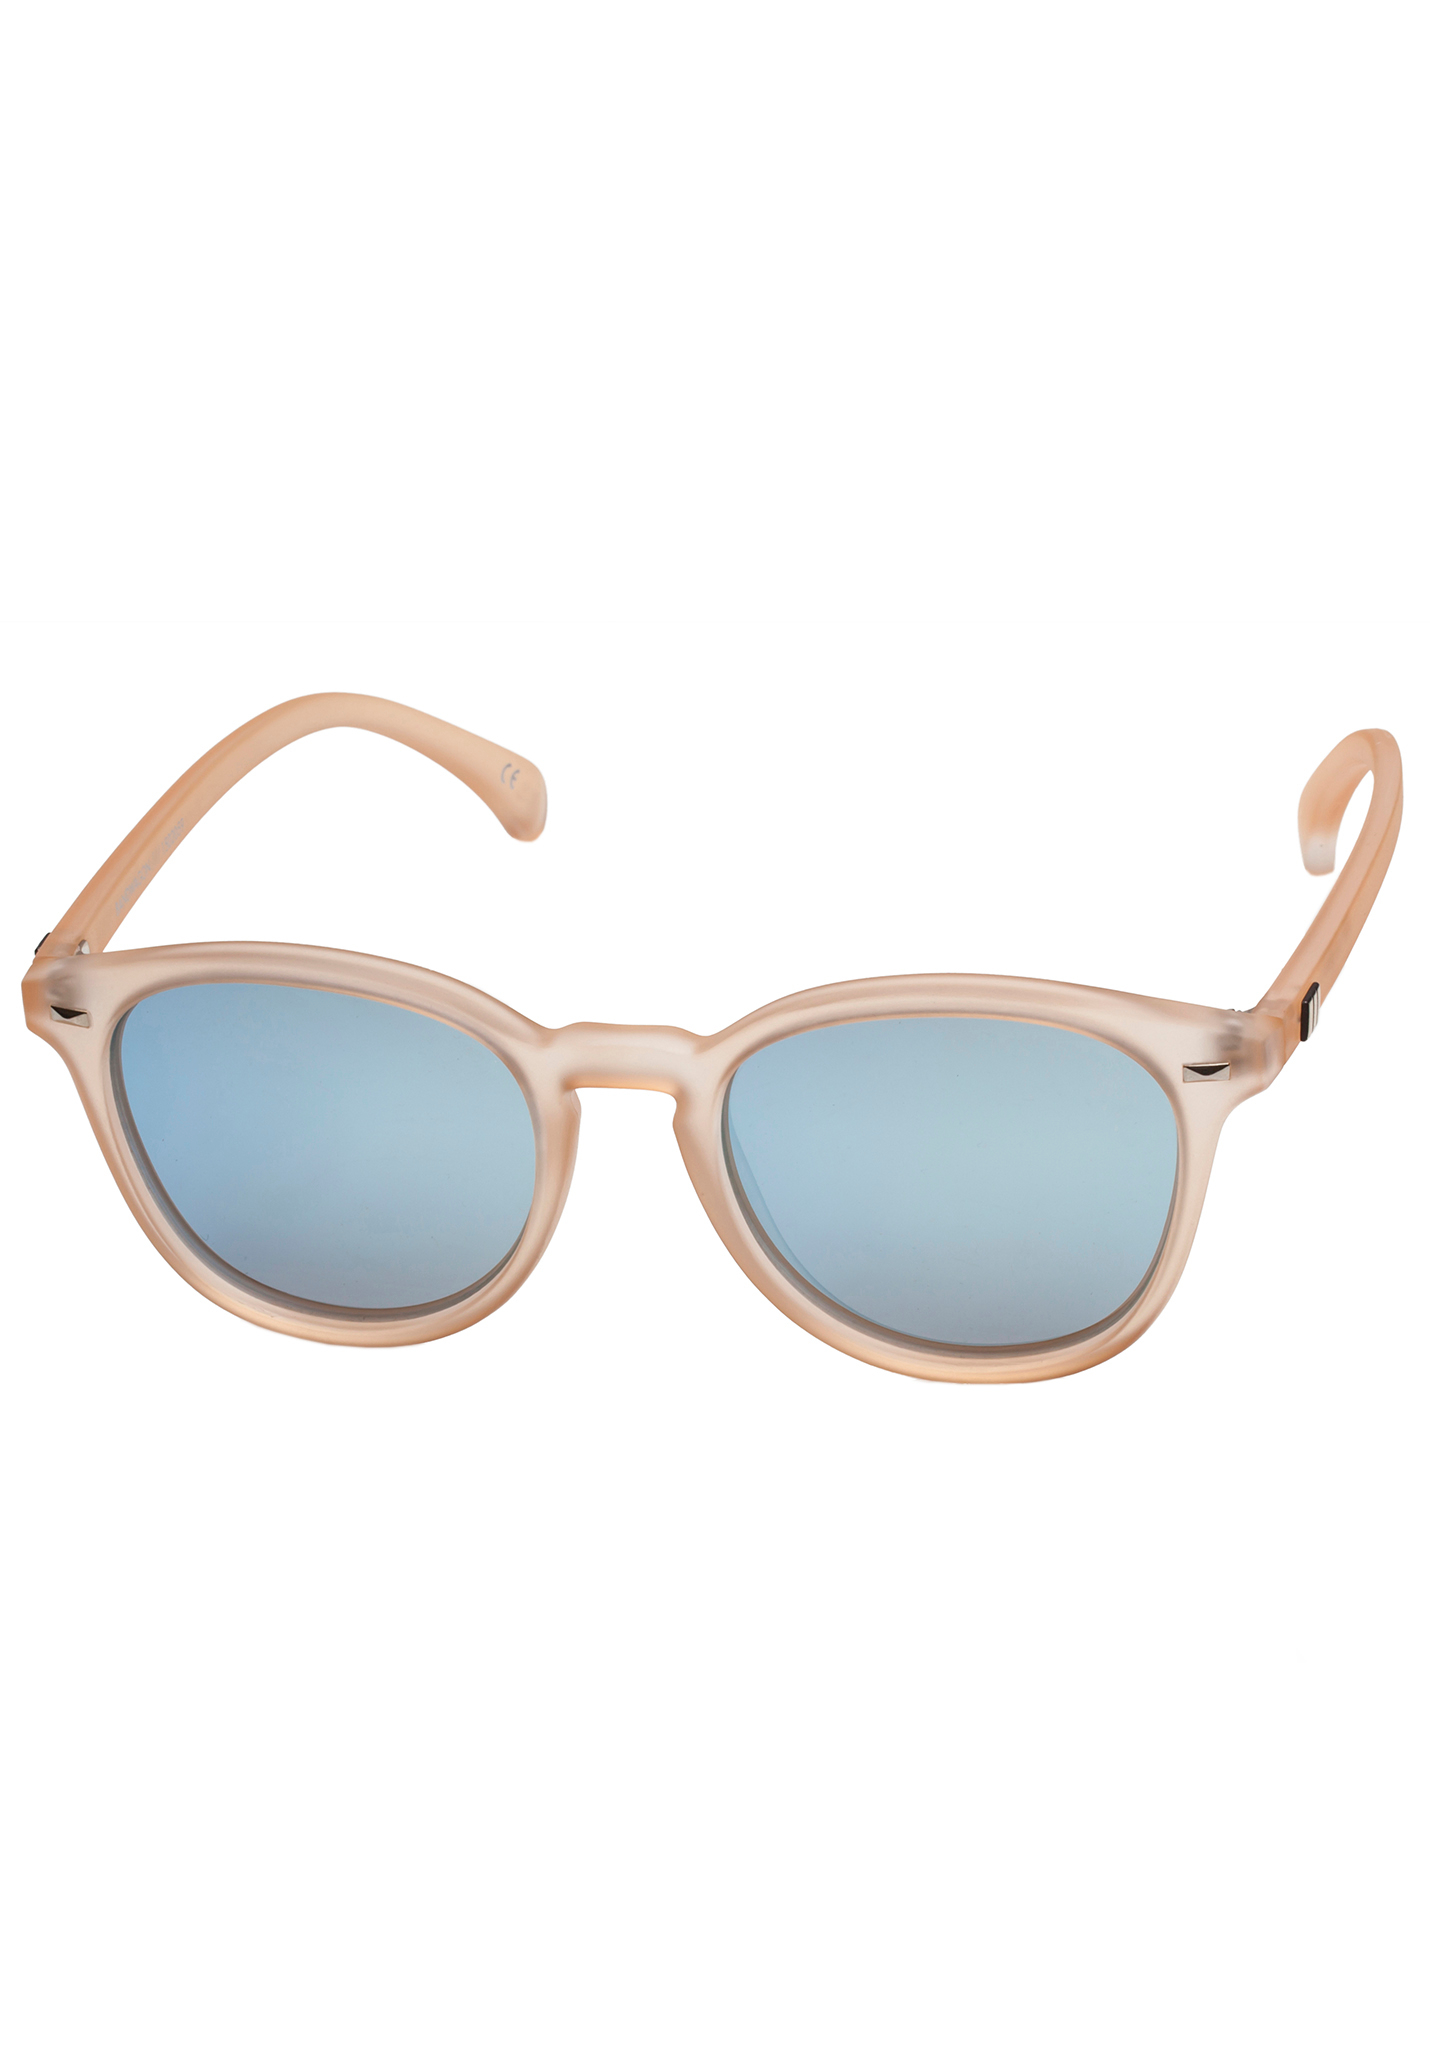 Le Specs Bandwagon Sonnenbrillen rohzucker/eisblau revo spiegelglas One Size